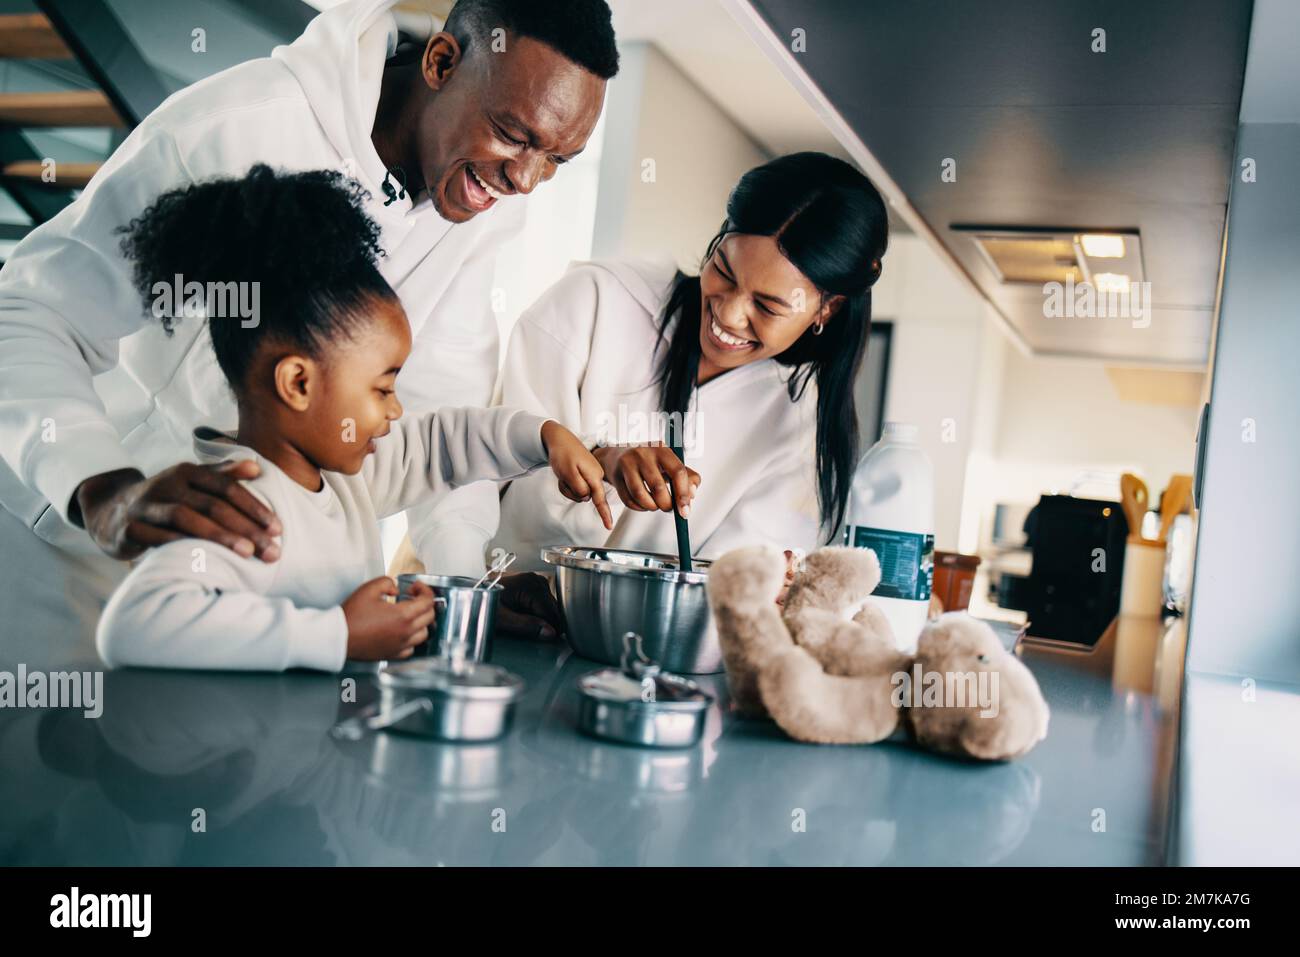 Zwei Eltern machen Pfannkuchen mit ihrer Tochter in der Küche. Die schwarze Familie sieht glücklich aus, wenn sie am Wochenende zusammen Frühstück zubereiten. Paar B. Stockfoto